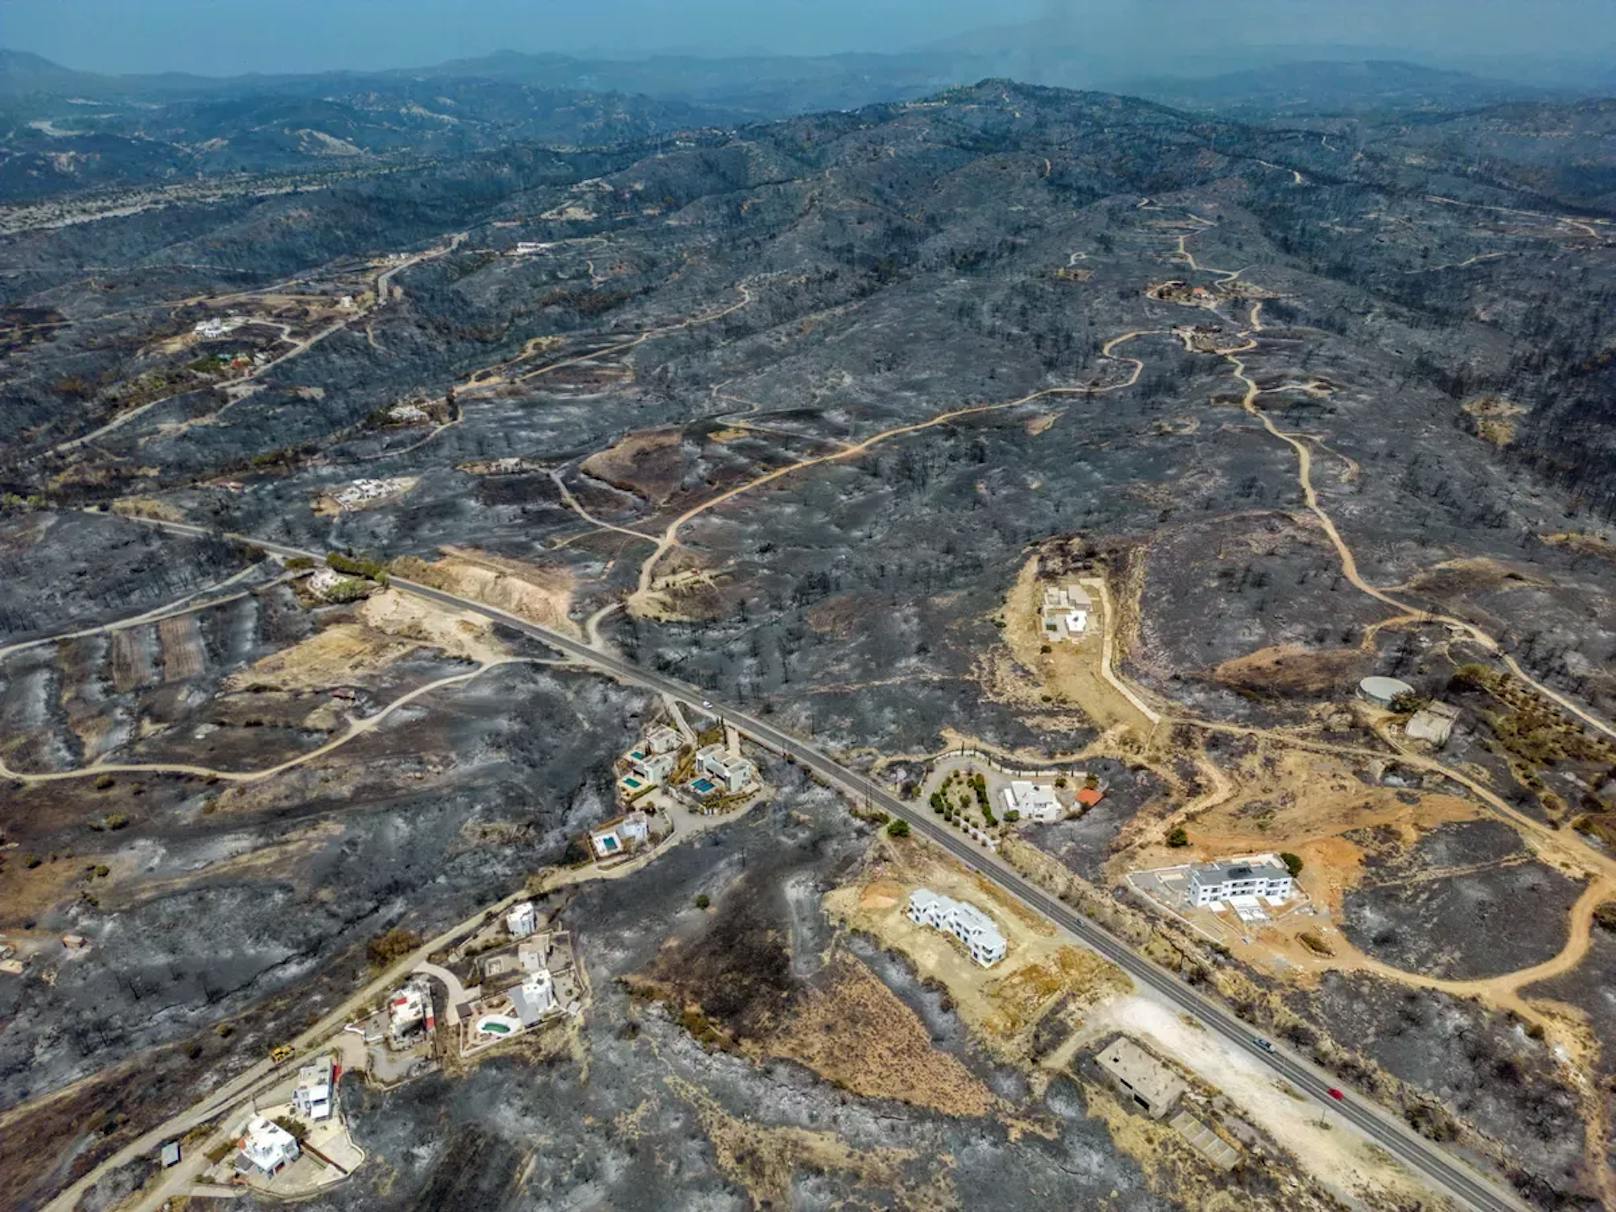 Bilder zeigen massive Zerstörung nach Flammen-Inferno